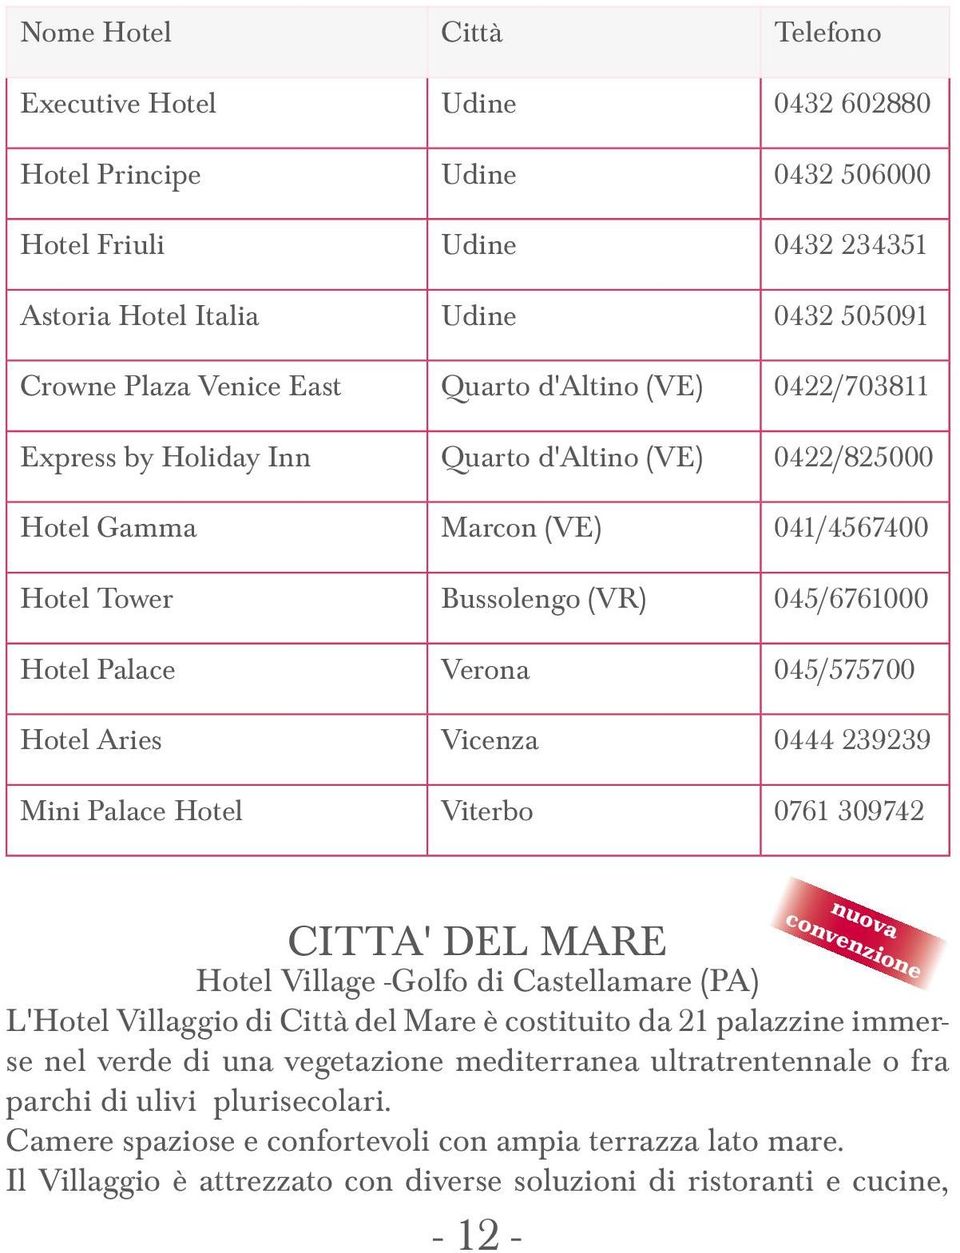 Aries Vicenza 0444 239239 Mini Palace Hotel Viterbo 0761 309742 nuova convenzione CITTA' DEL MARE Hotel Village -Golfo di Castellamare (PA) L'Hotel Villaggio di Città del Mare è costituito da 21